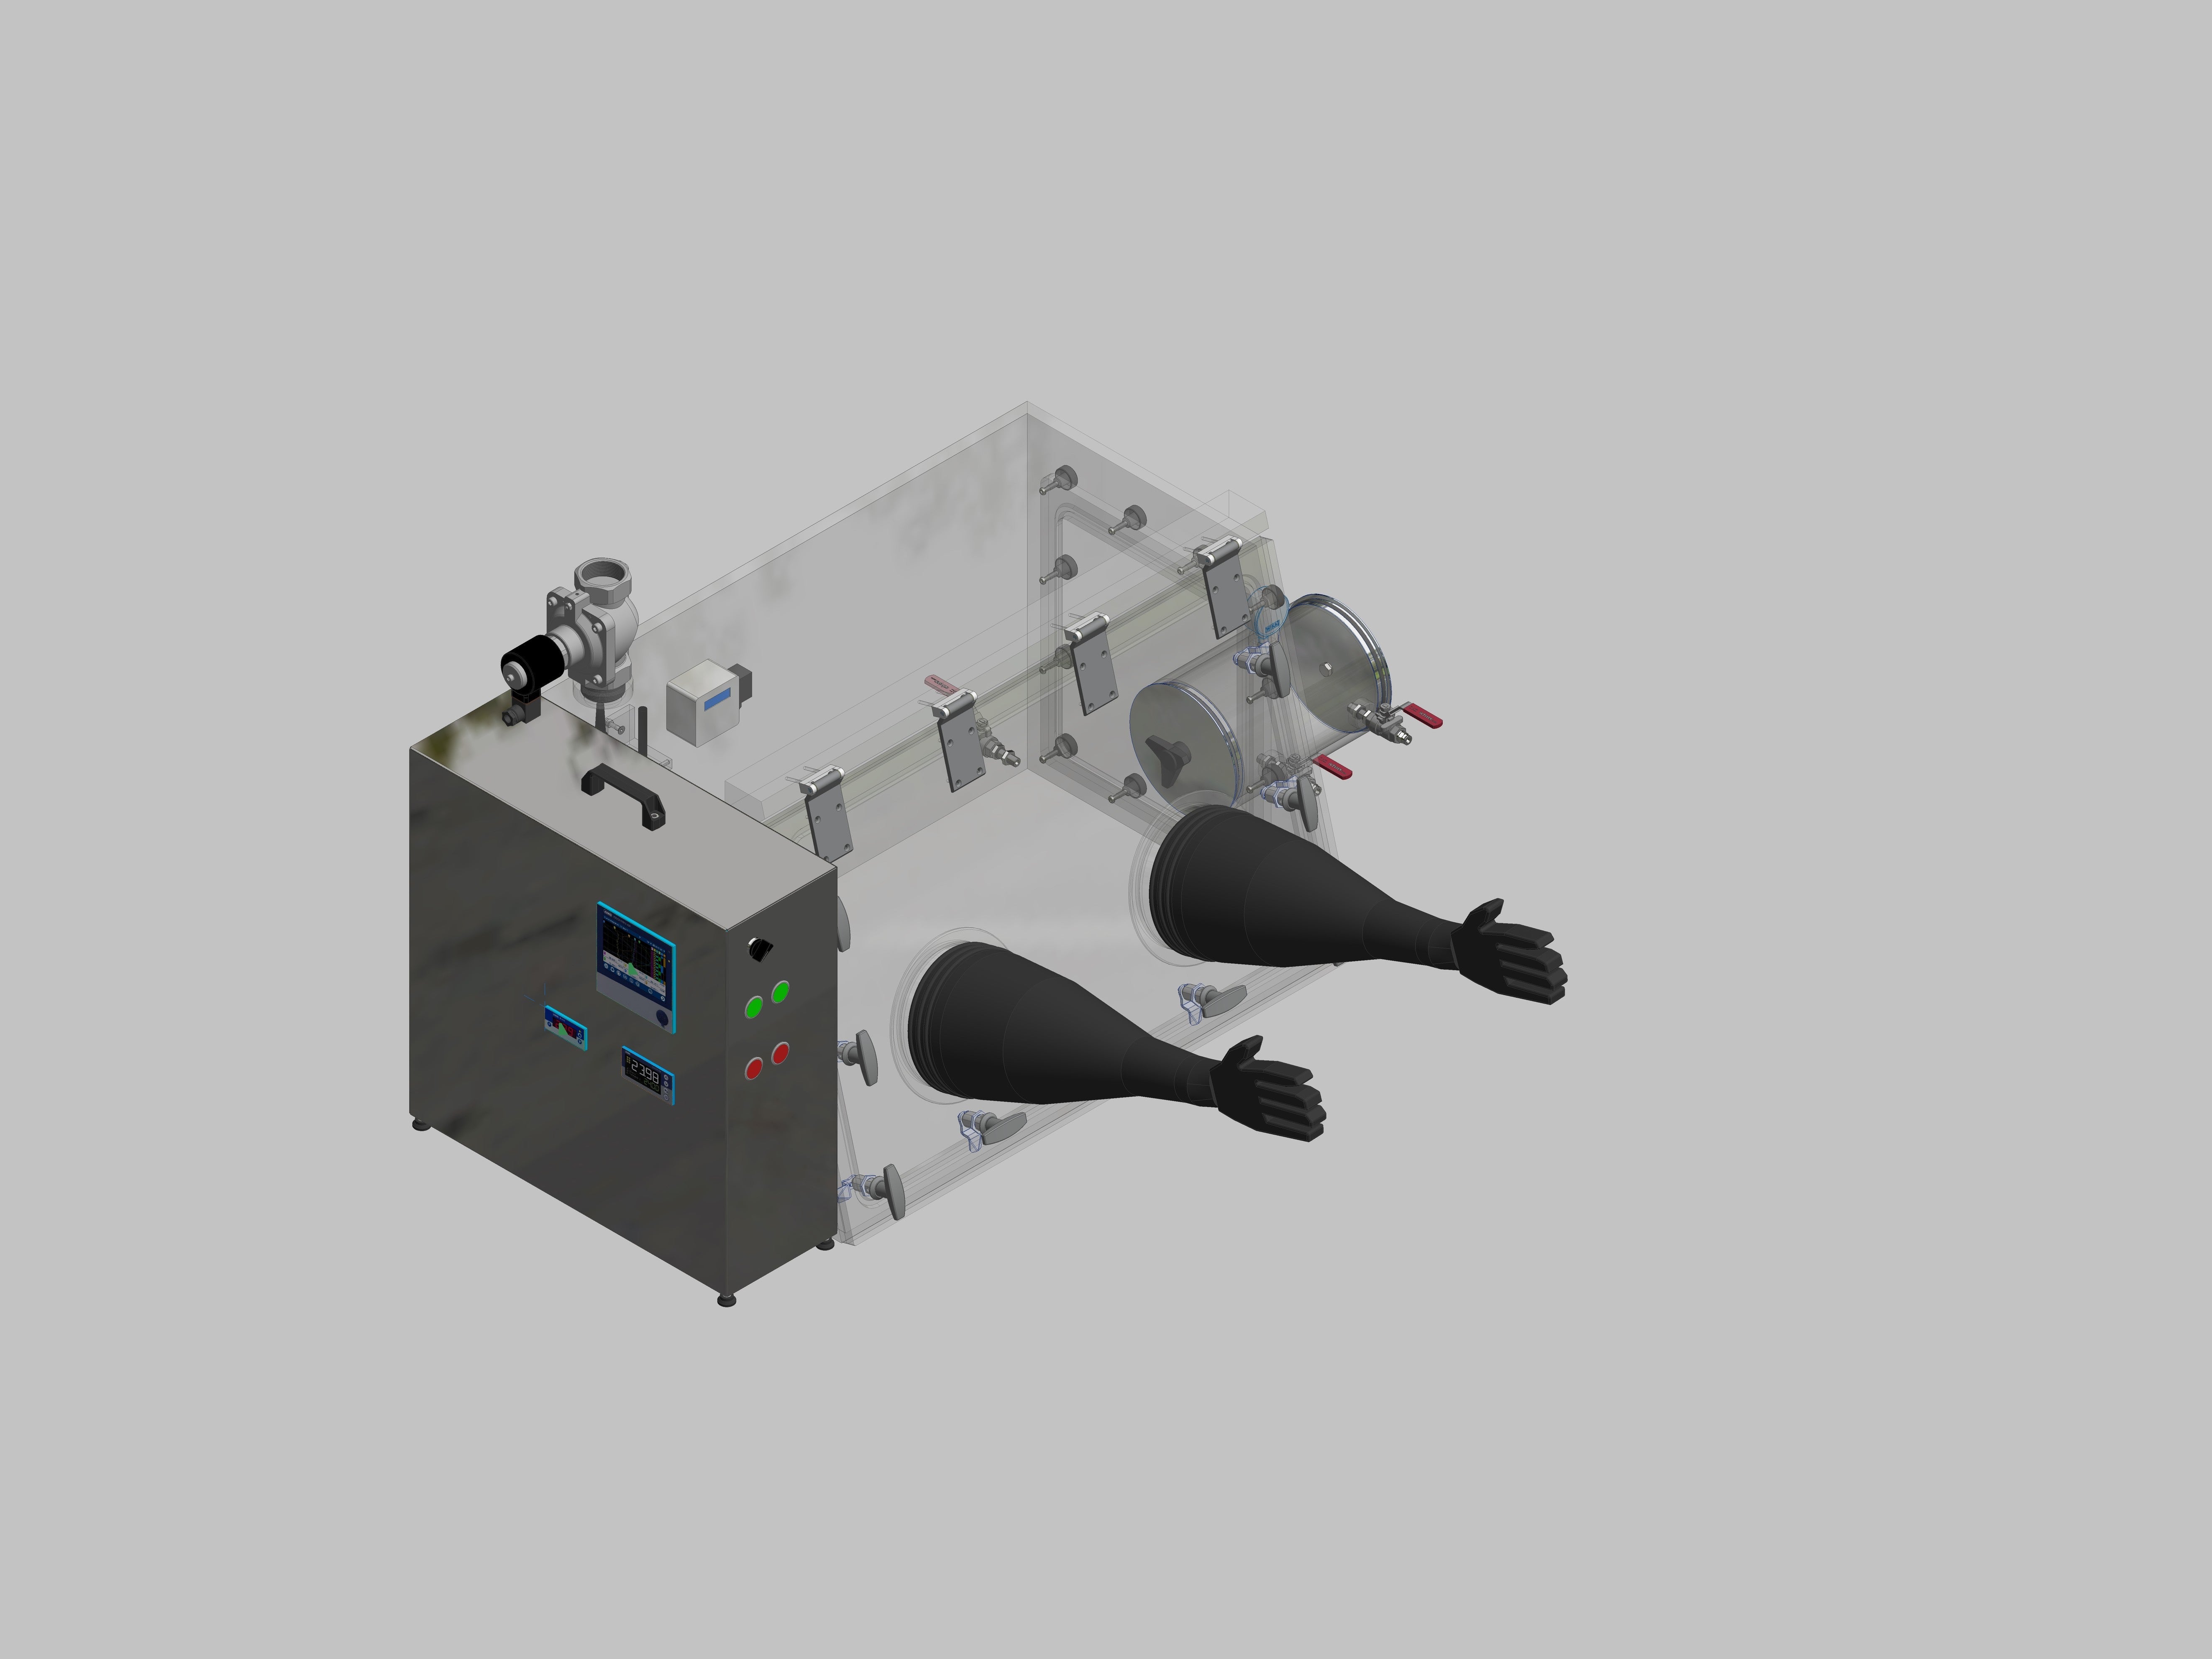 Glovebox aus Acryl> Gasbefüllung: Spülautomatik mit Druckregelung, Frontausführung: Schwenkbar nach oben, Seitenausführung: Vakuumschleuse rund, Steuerung: Sauerstoffregler und Feuchteanzeige mit Datenlogger